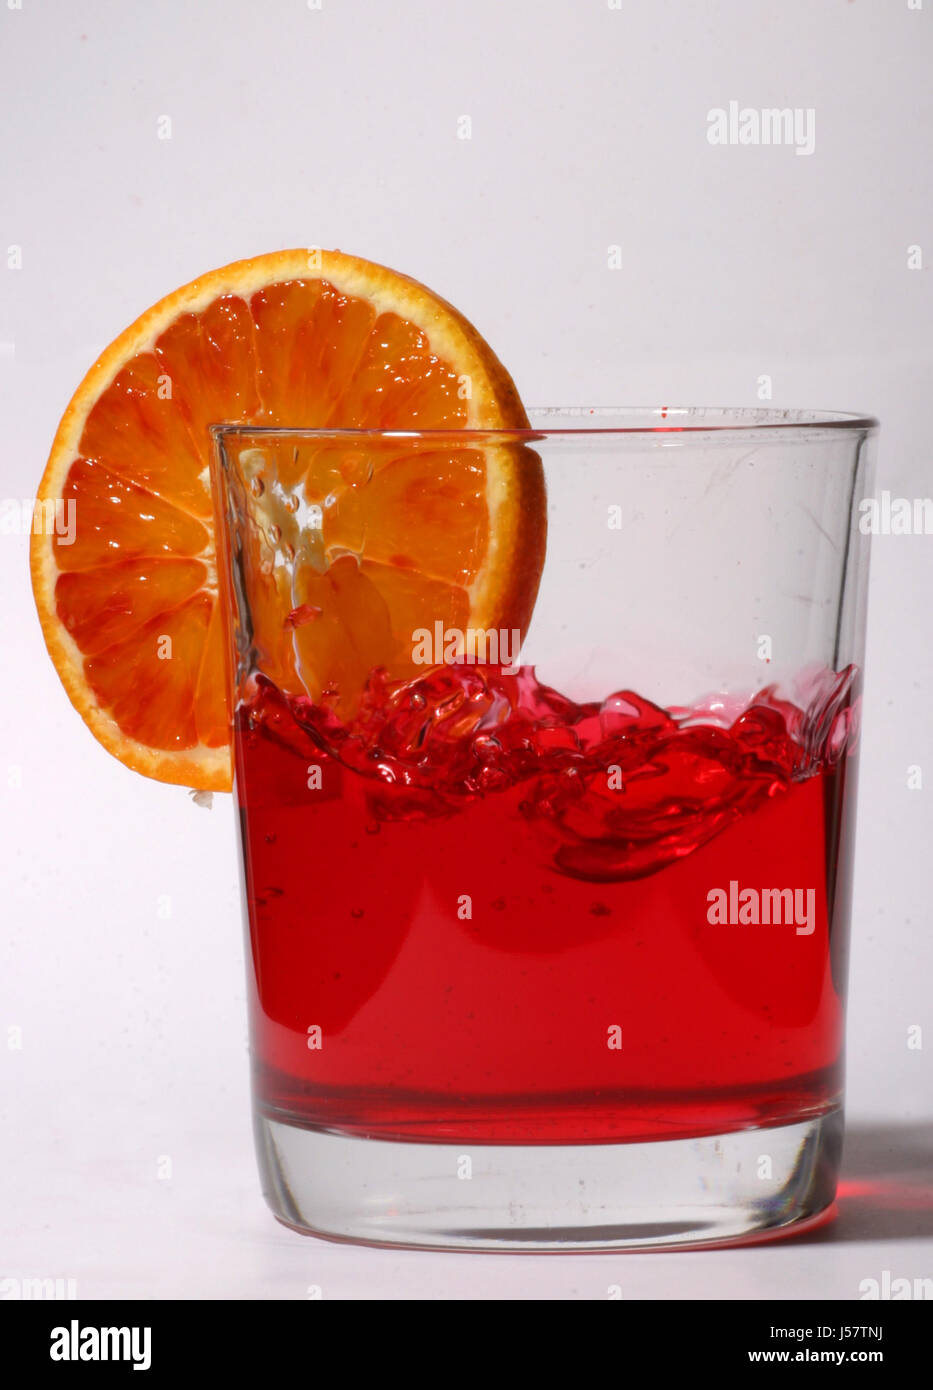 Calice di vetro tumbler cibo aliment salute bere alcool bibs bicchieri Foto Stock